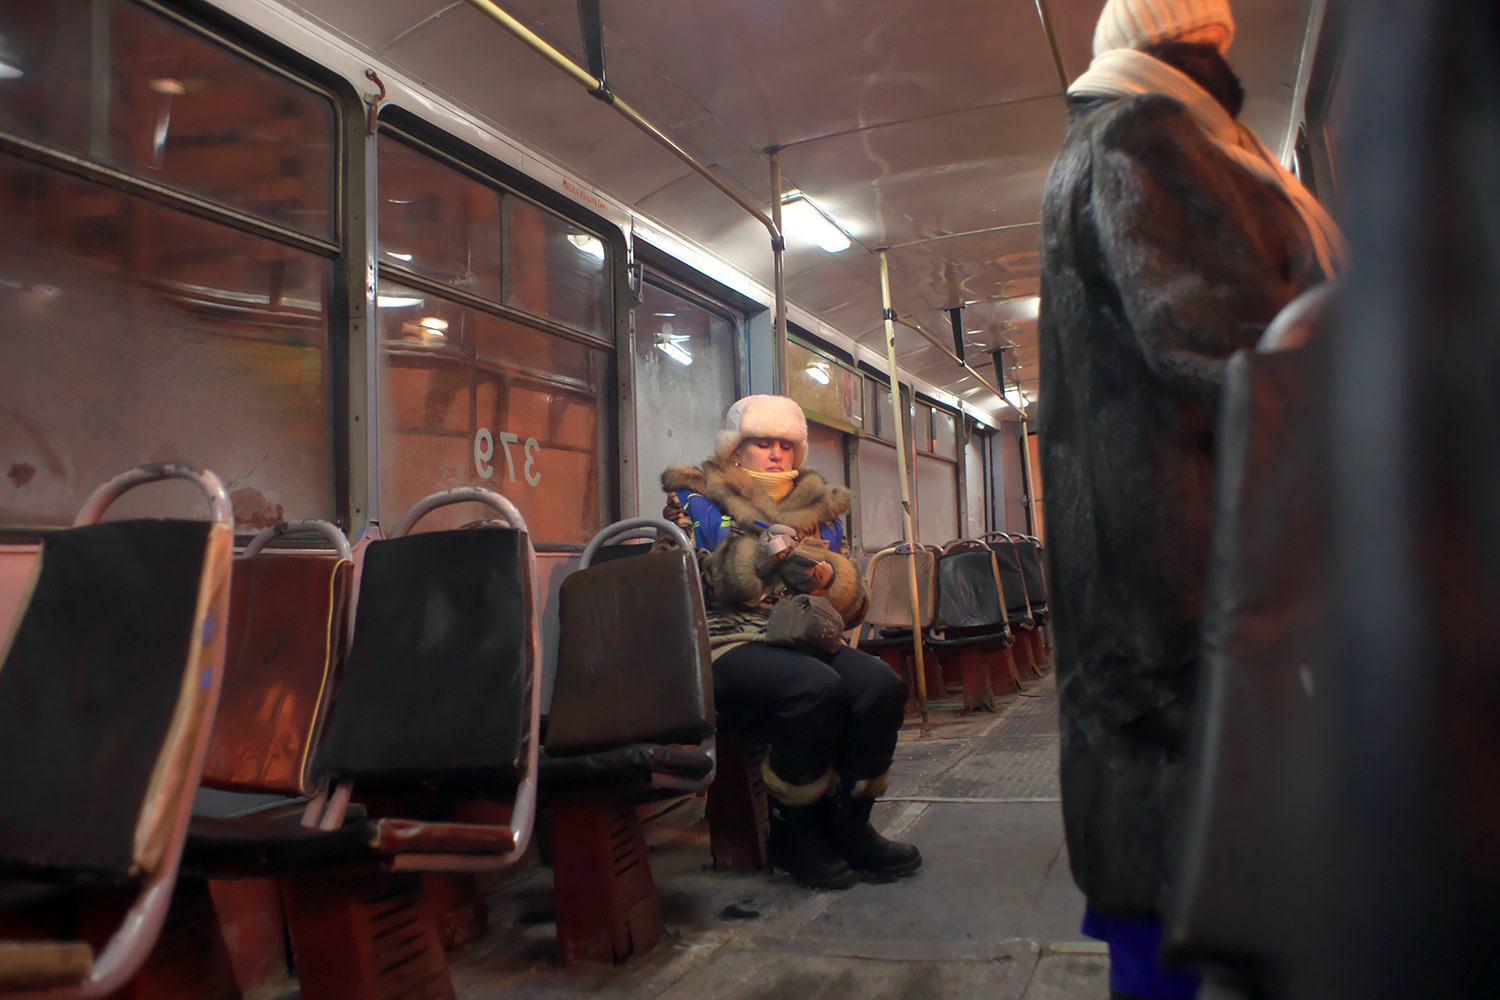 Кондуктор считает выручку в почти пустом замершем трамвае во время сильного мороза в Витебске, февраль 2012 года. Фото Сергея Серебро